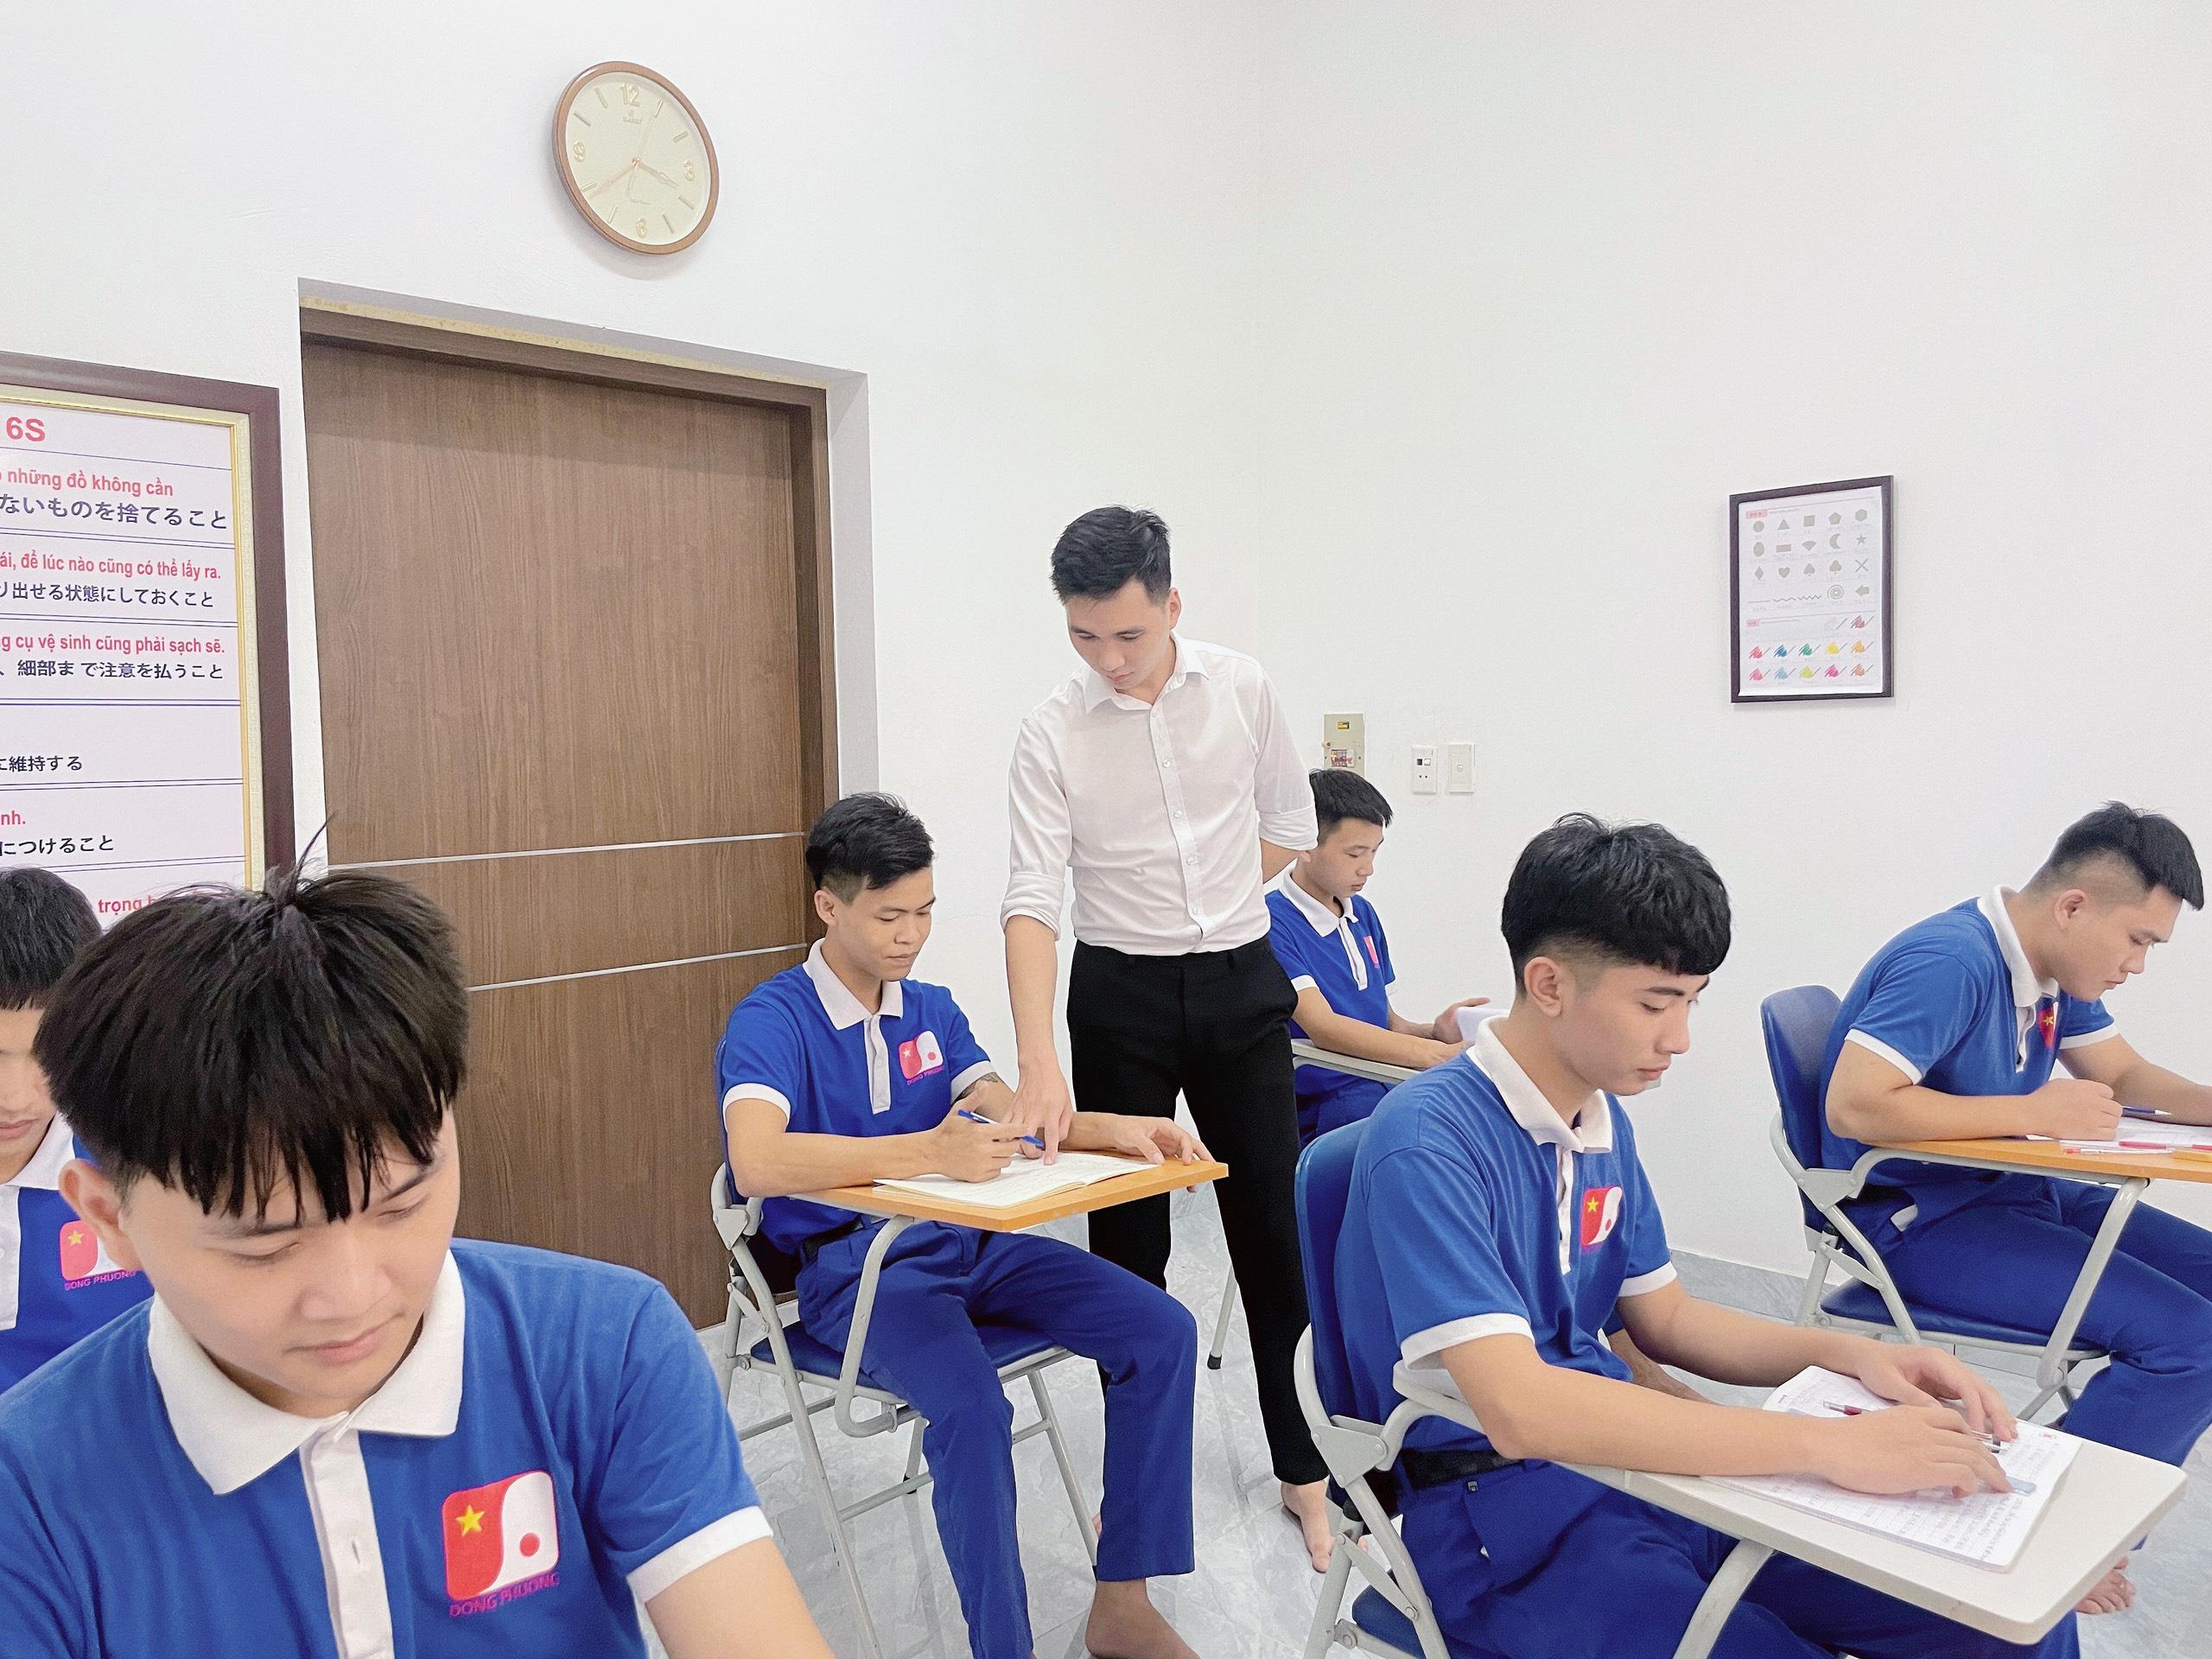 Thực tập sinh Đông Phương được đào tạo ngôn ngữ Nhật Bản và Giáo dục định hướng trước khi xuất cảnh